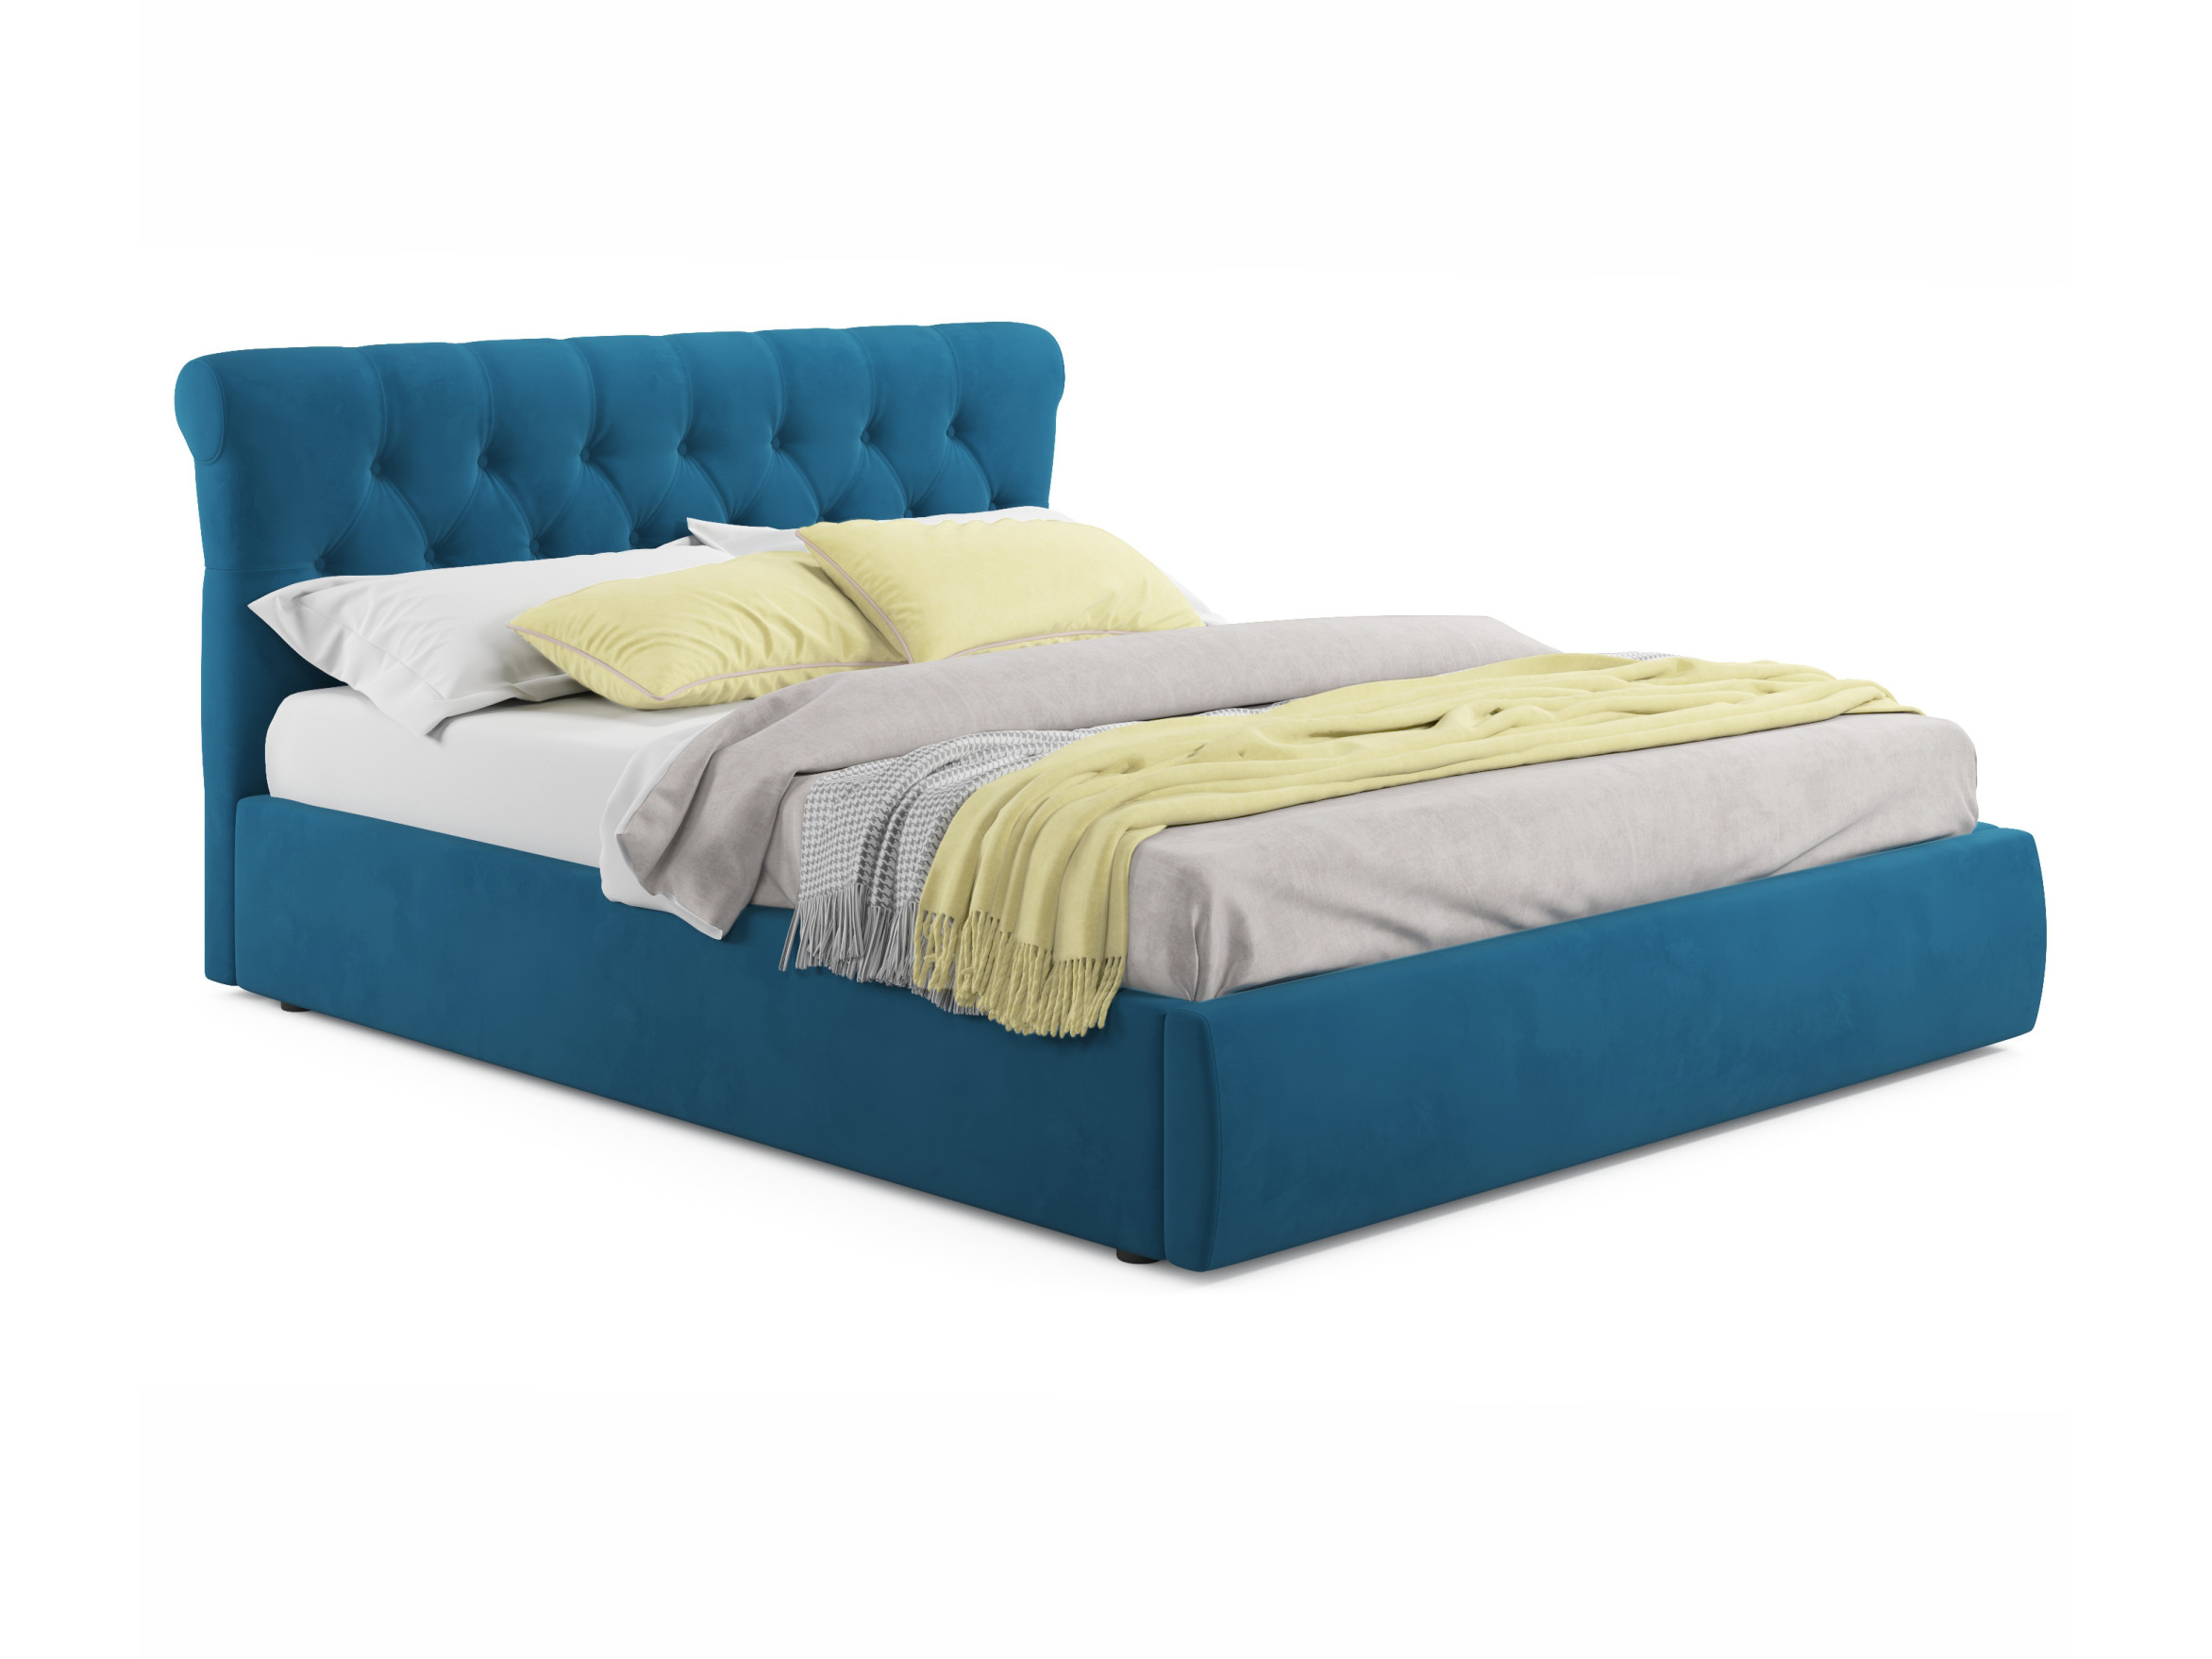 Мягкая кровать Ameli 1800 синяя с подъемным механизмом синий, Синий, Велюр, ДСП мягкая кровать ameli 1600 синяя с подъемным механизмом синий синий велюр дсп